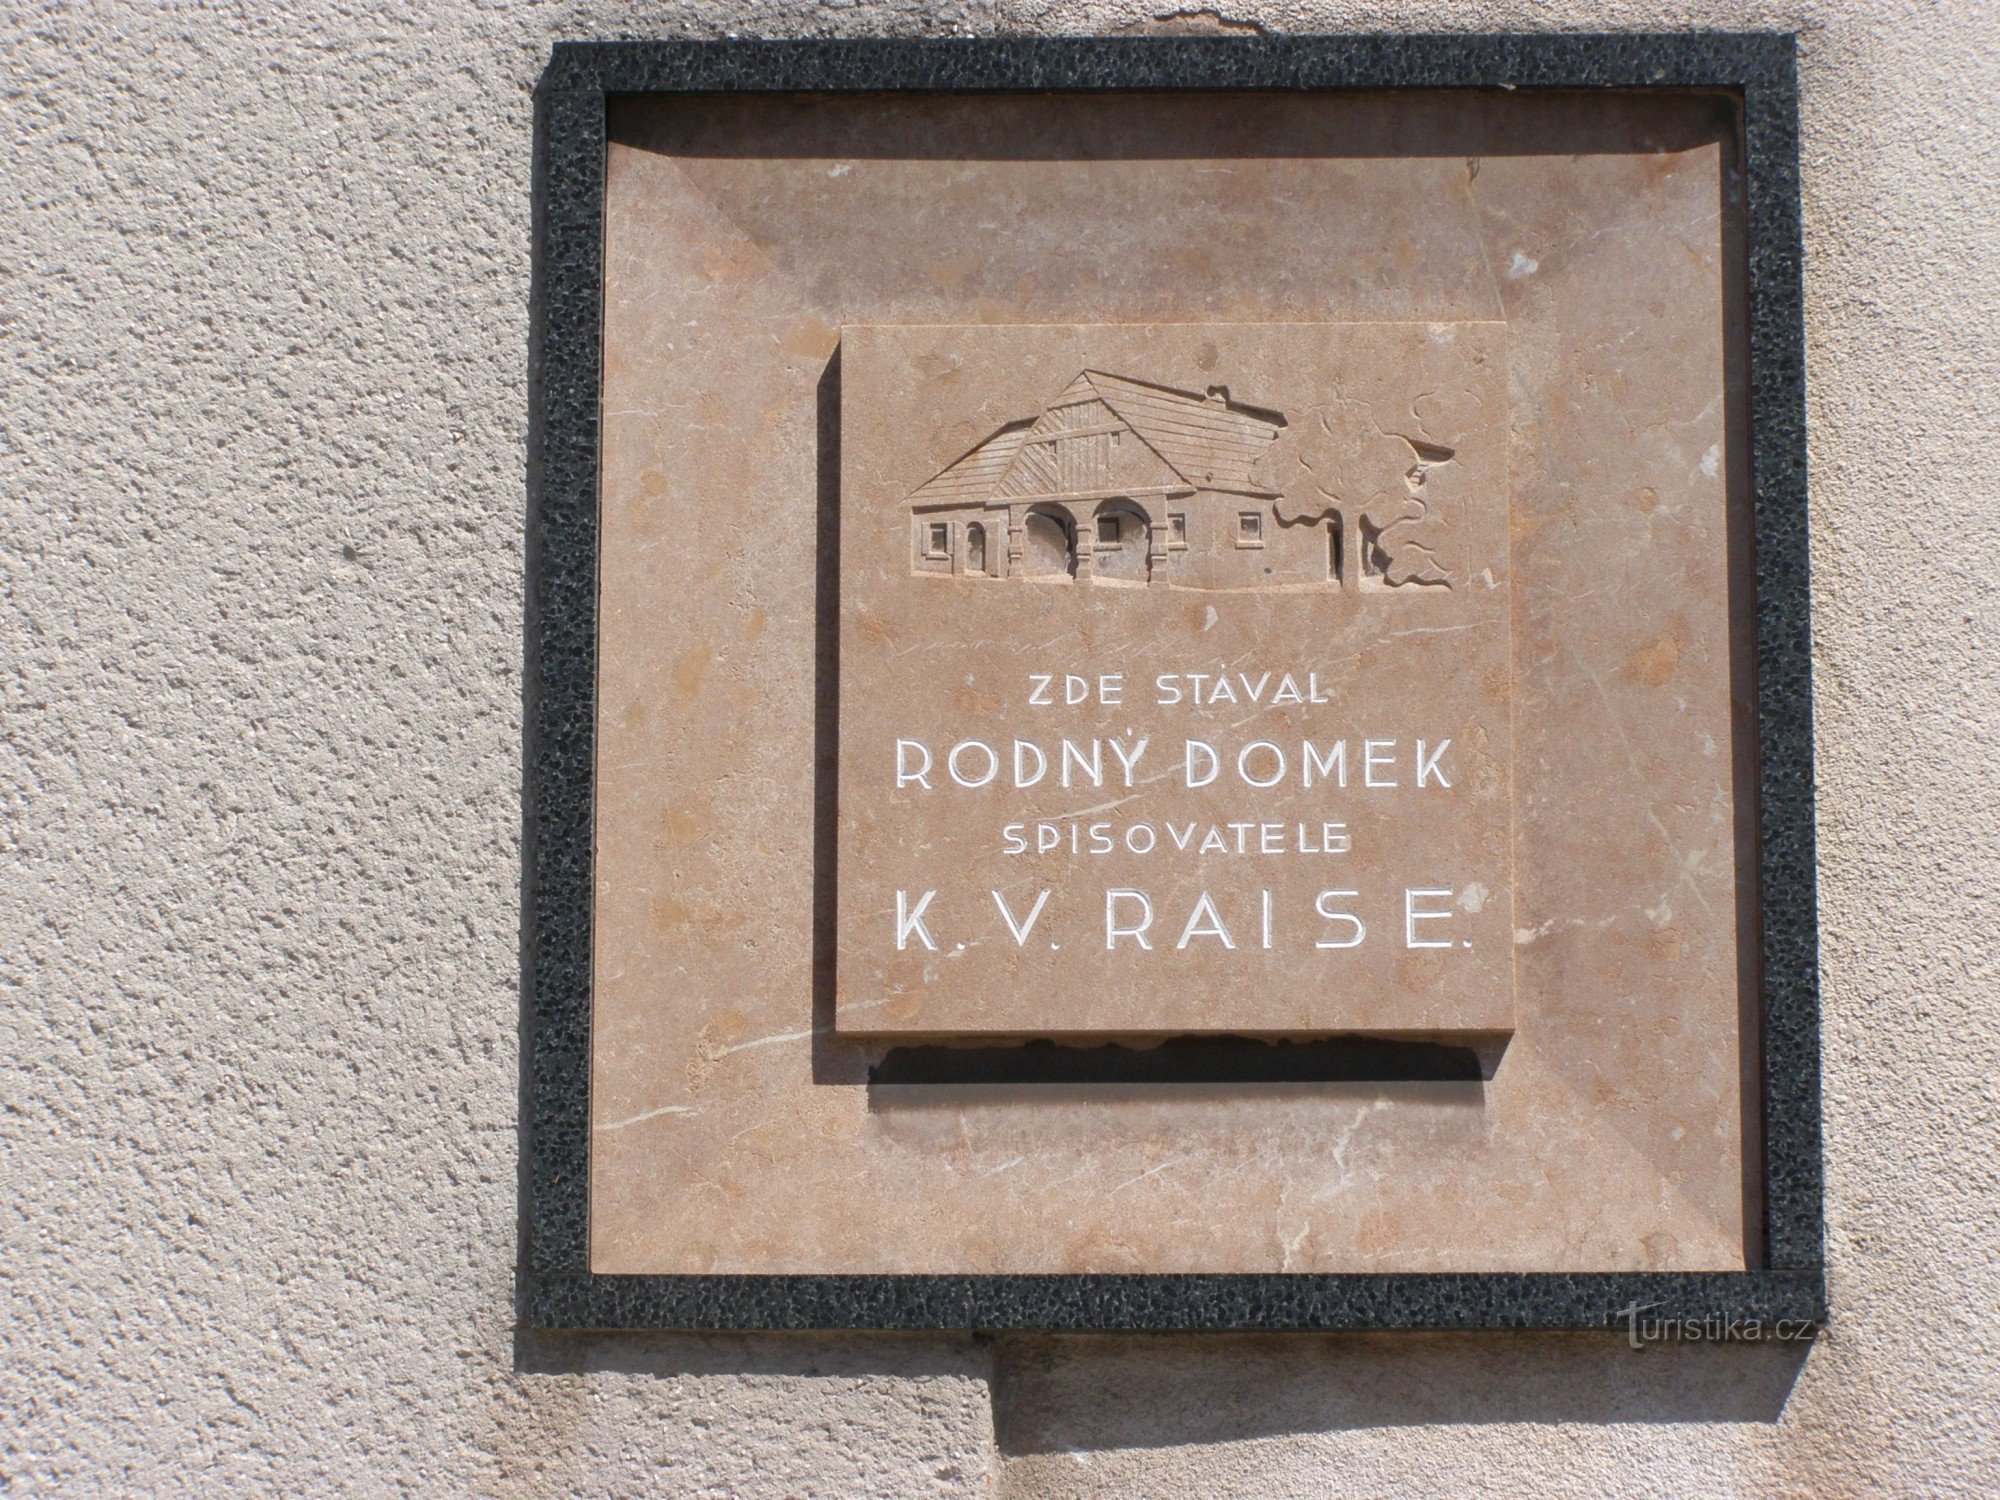 Lázně Bělohrad - információs központ, emléktábla KVRaise szülőhelyére